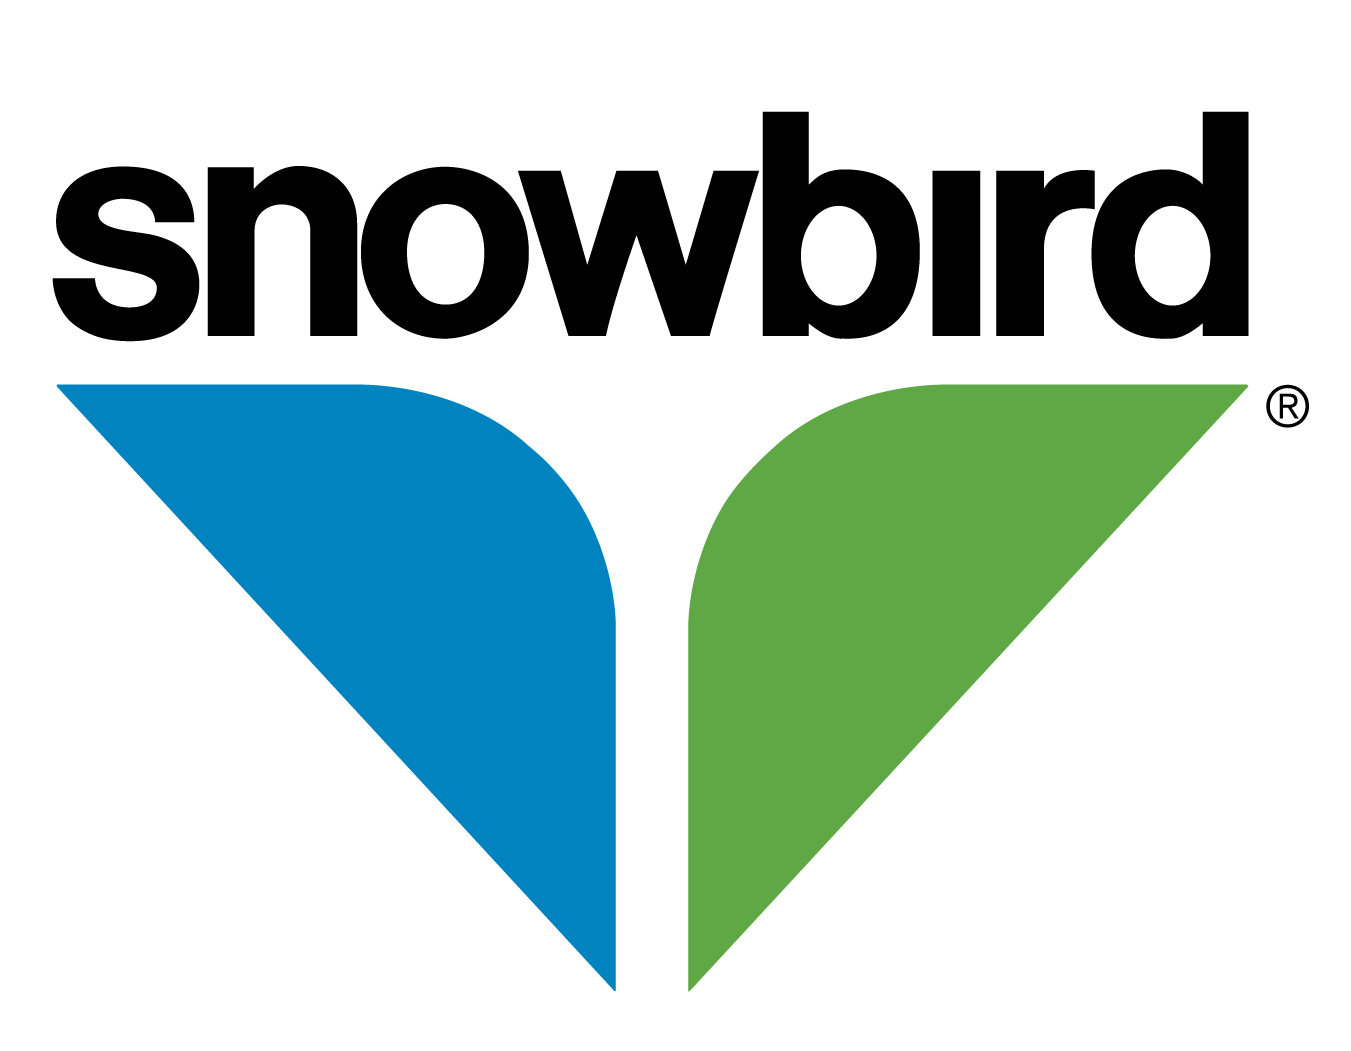 Author - Snowbird